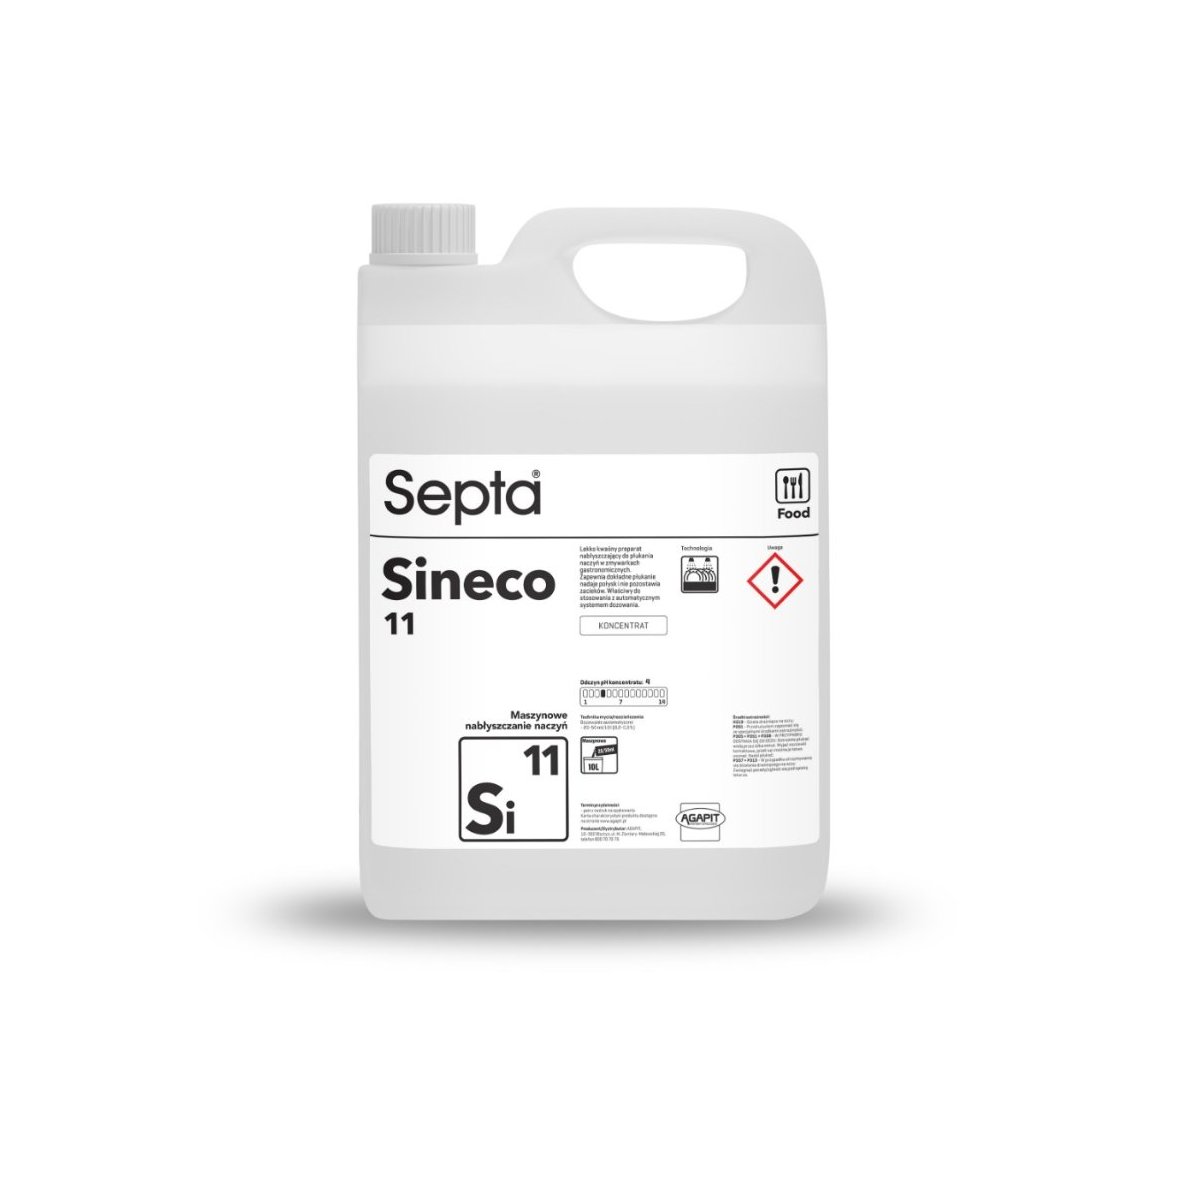 Septa Sineco 11 Si11 profesjonalny płyn do maszynowego nabłyszczania naczyń w zmywarkach gastronomicznych